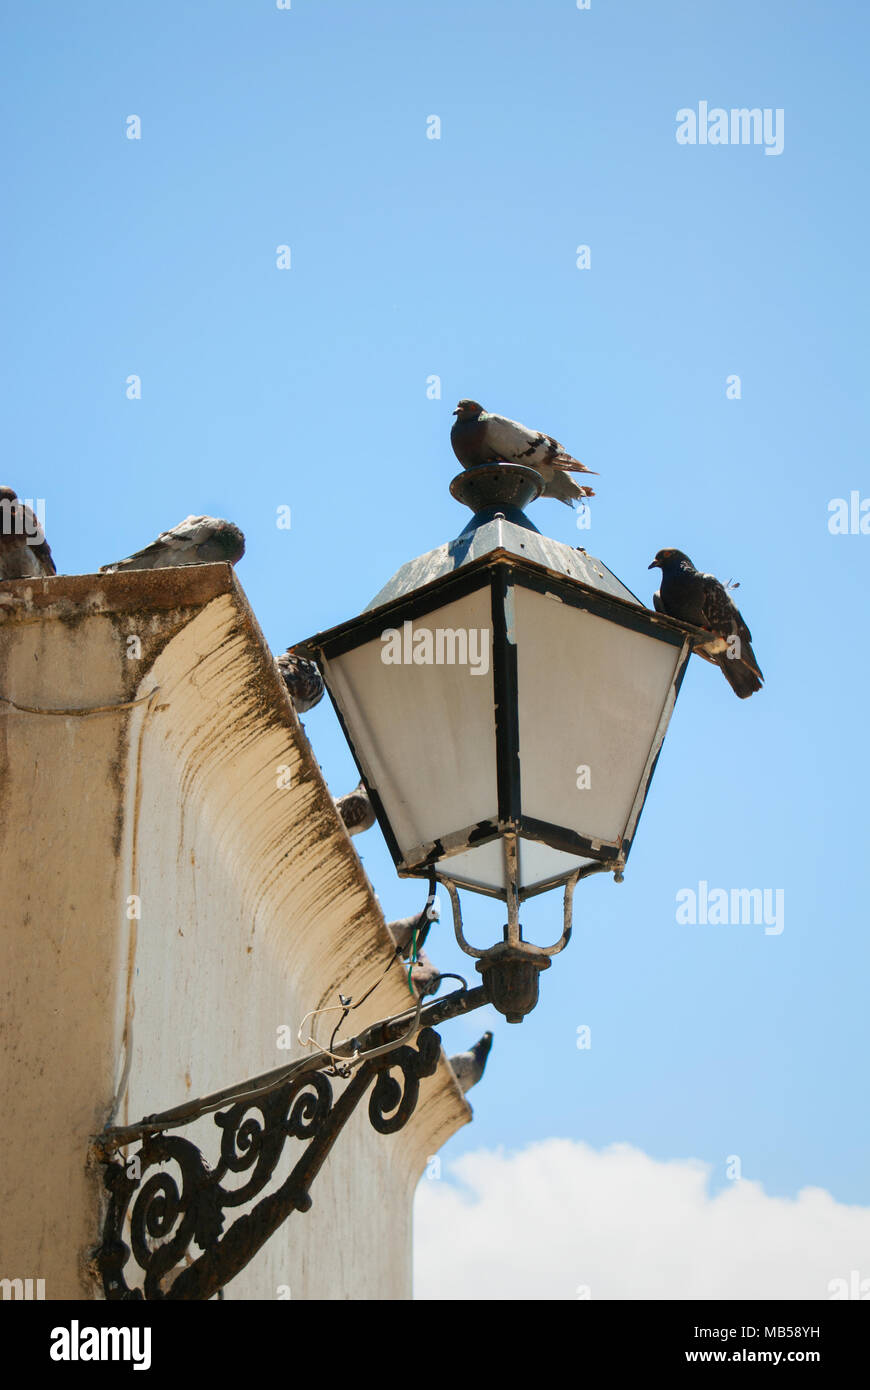 Un groupe de pigeons perchés sur un bâtiment ancien et l'appareil d'éclairage. Banque D'Images